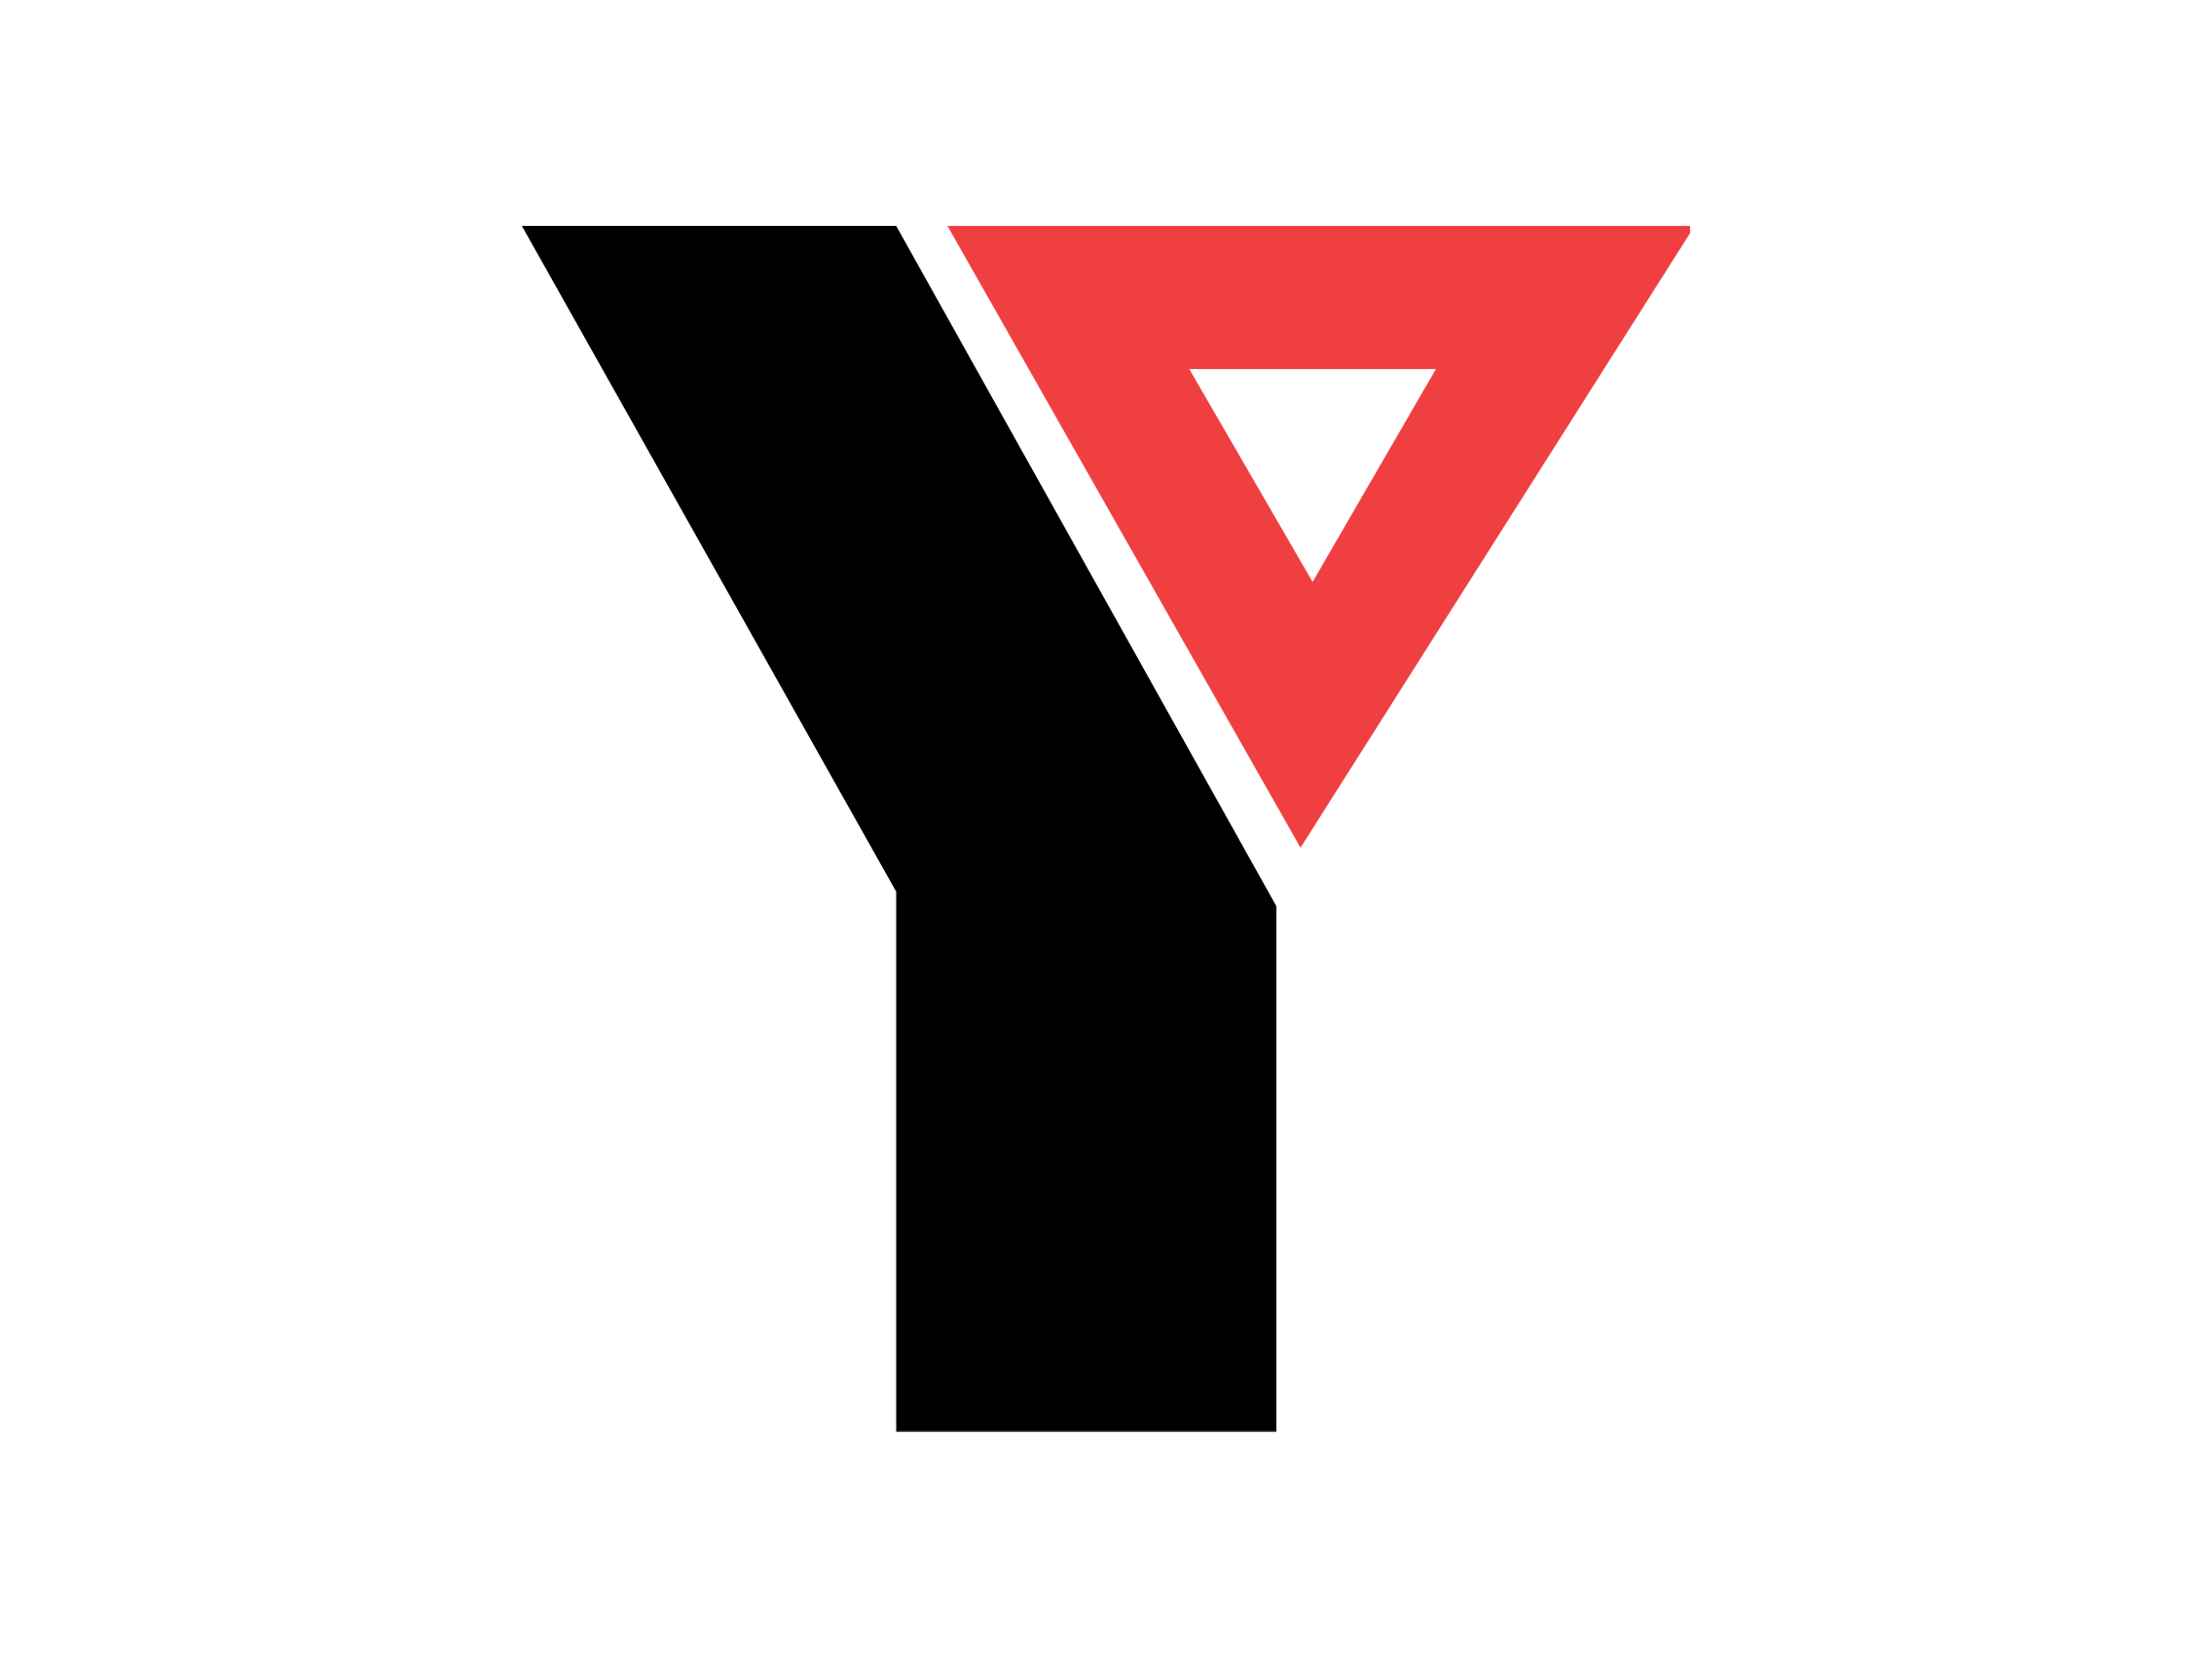 Red Y Logo - Y Logo Png Image